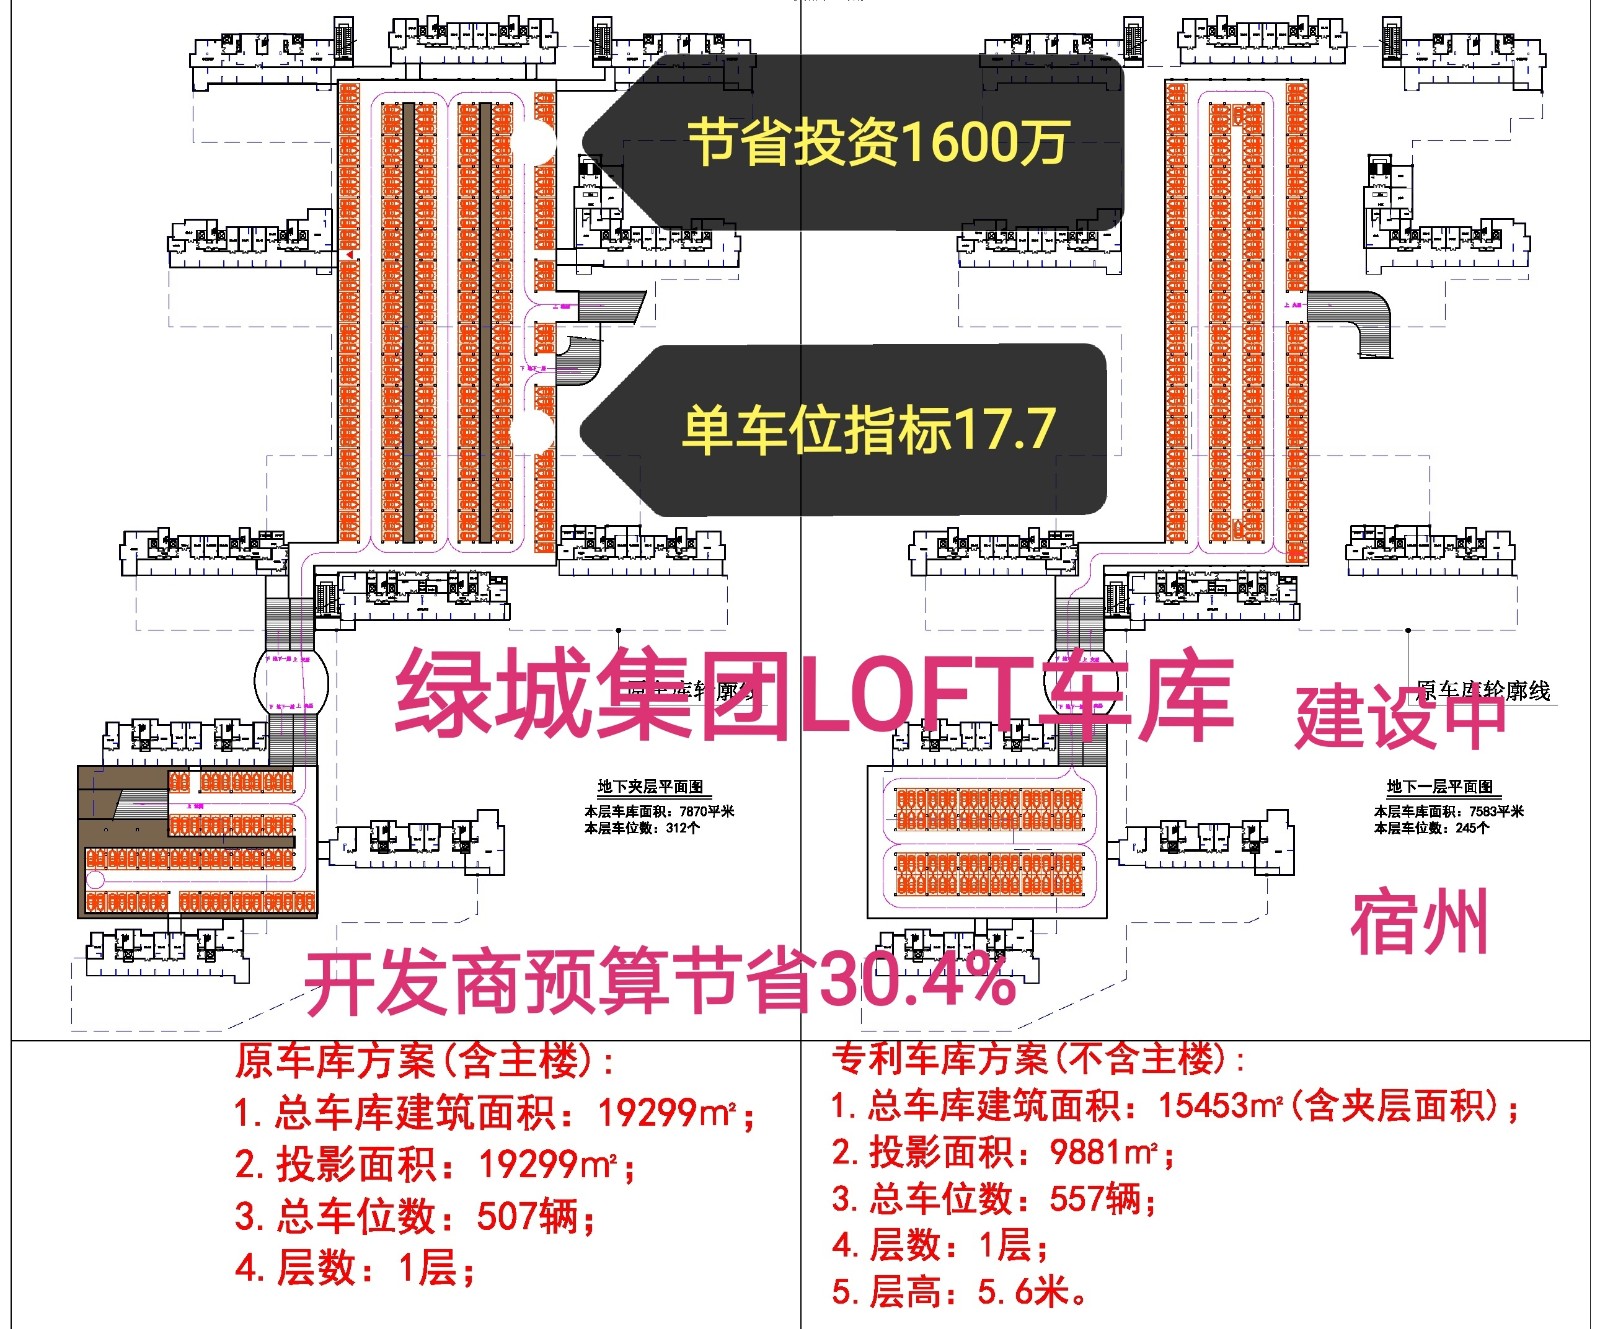 上海安徽绿城LOFT专利车库（初光先生授权）